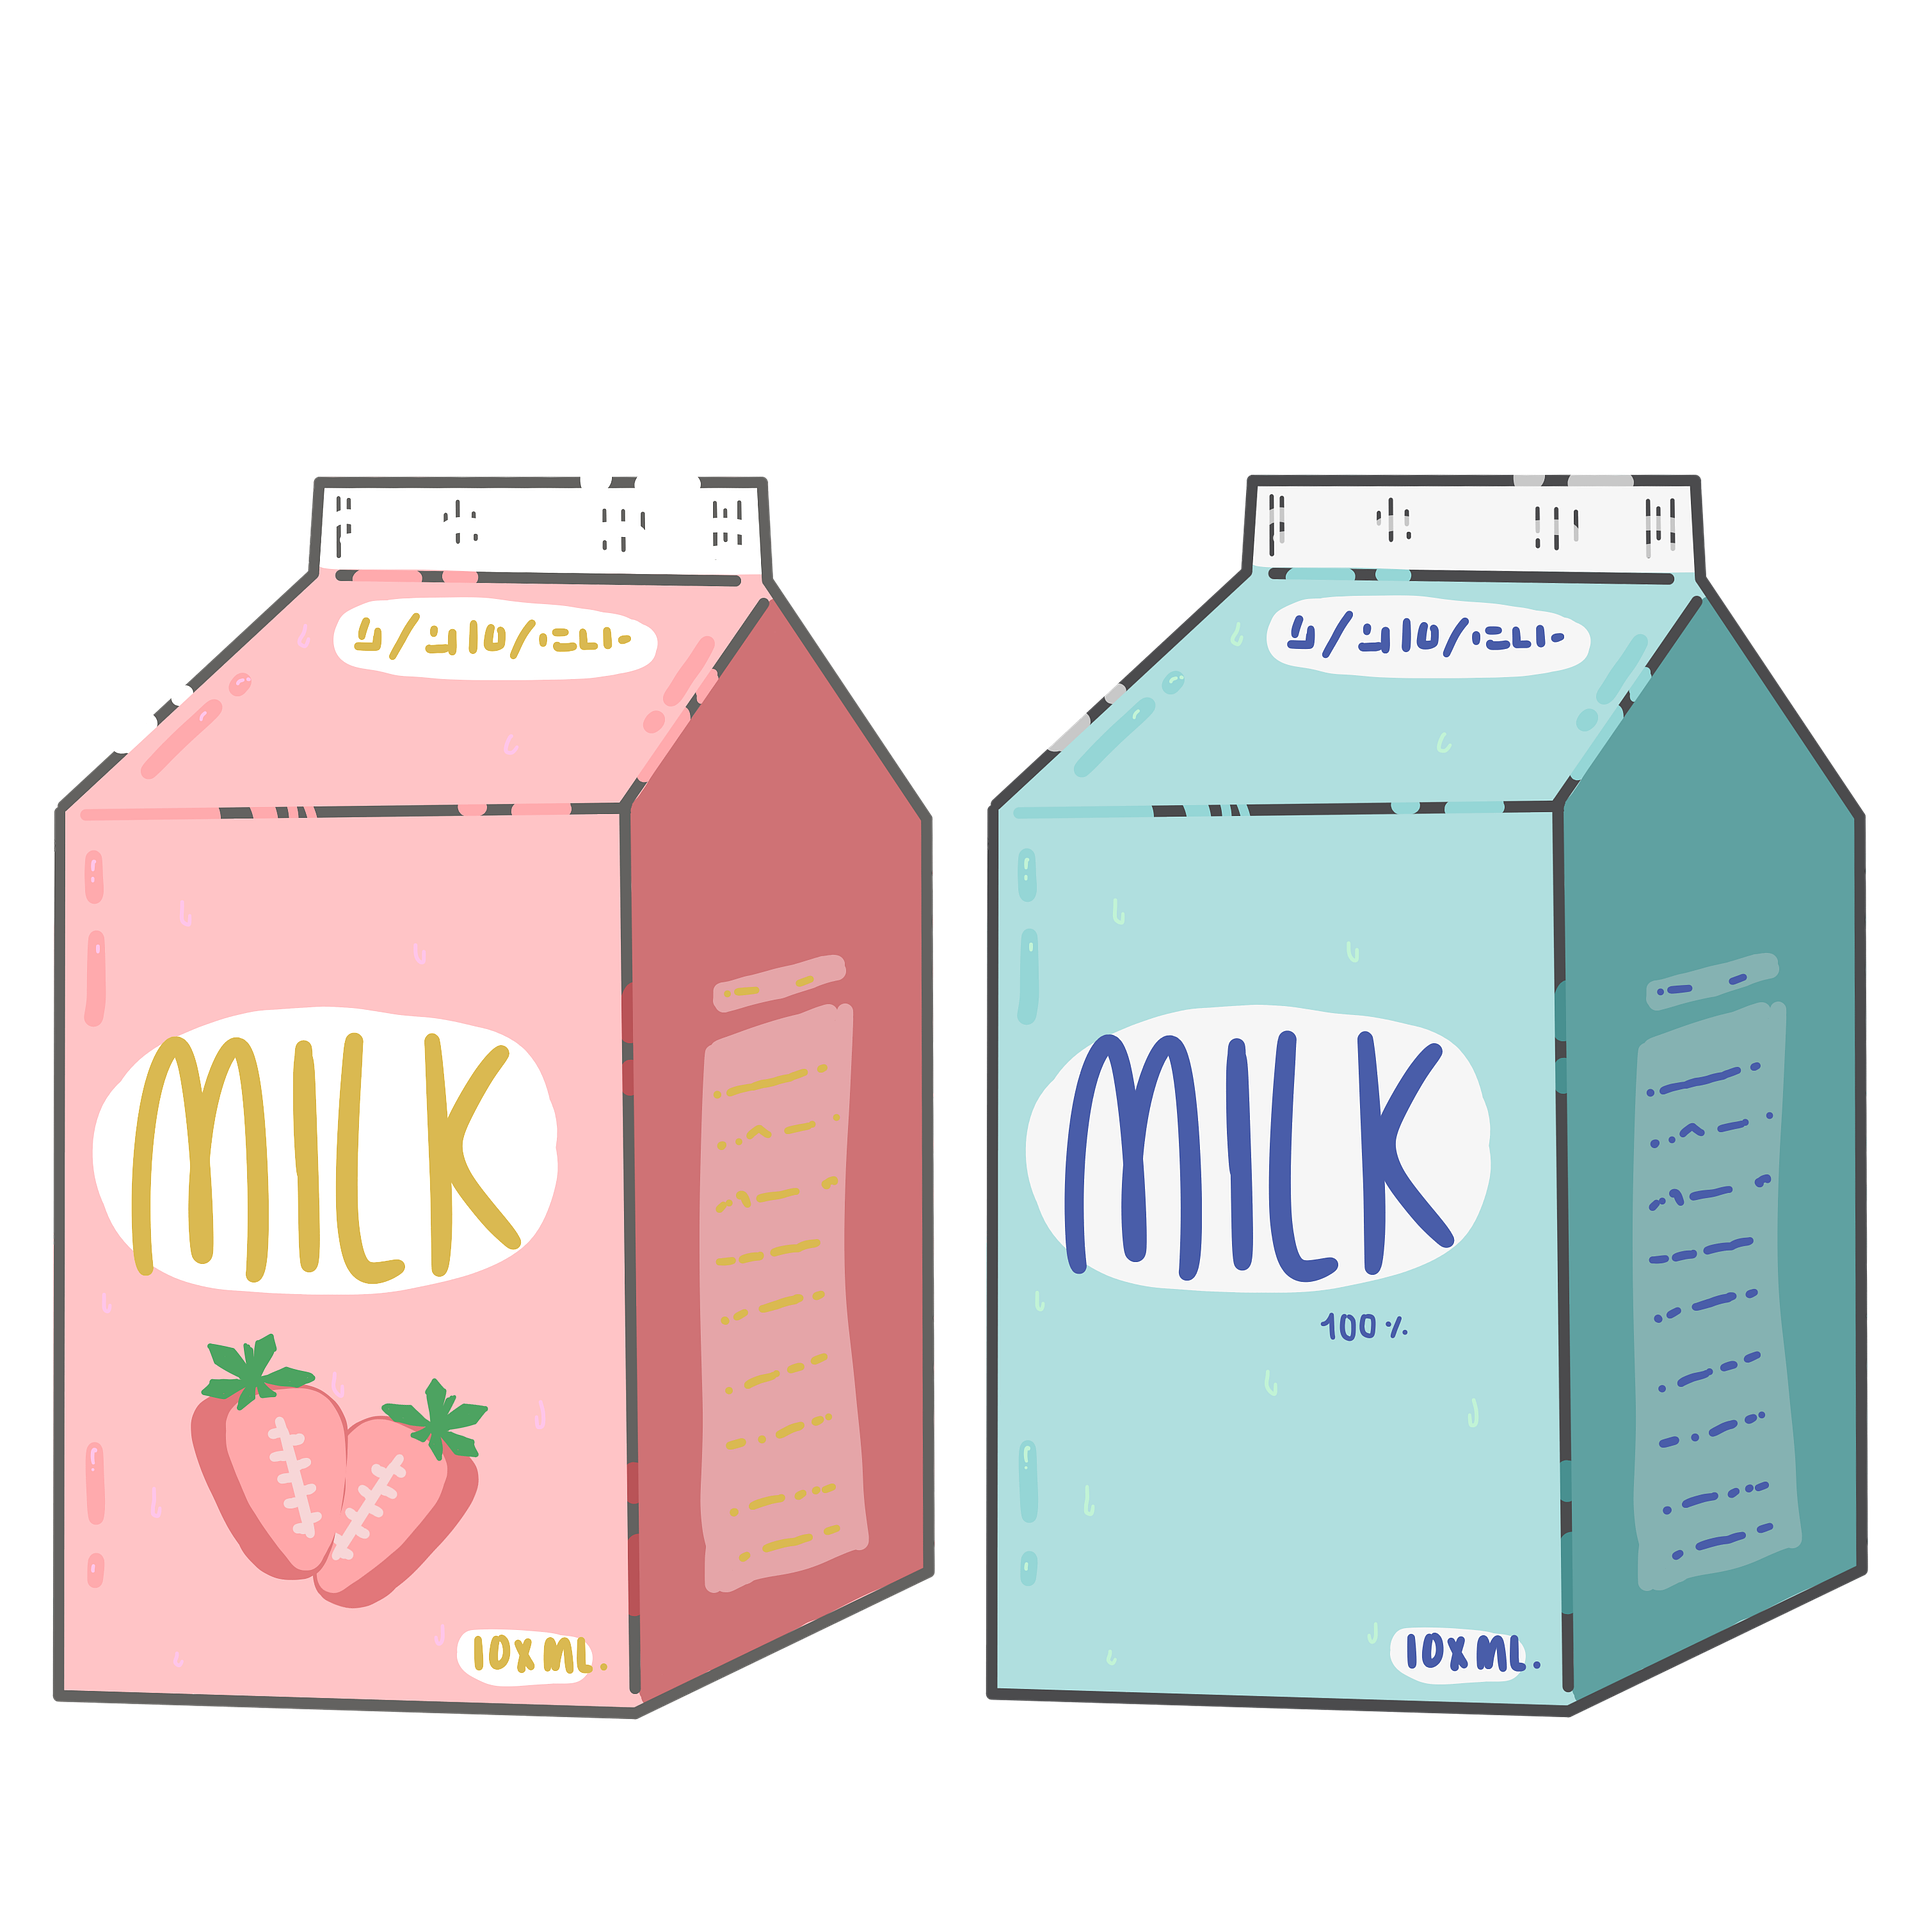 Покажи картинку молока. Нарисовать пакет молока. Картонная коробка молока. Молоко мультяшное. Молоко в картонной упаковке.